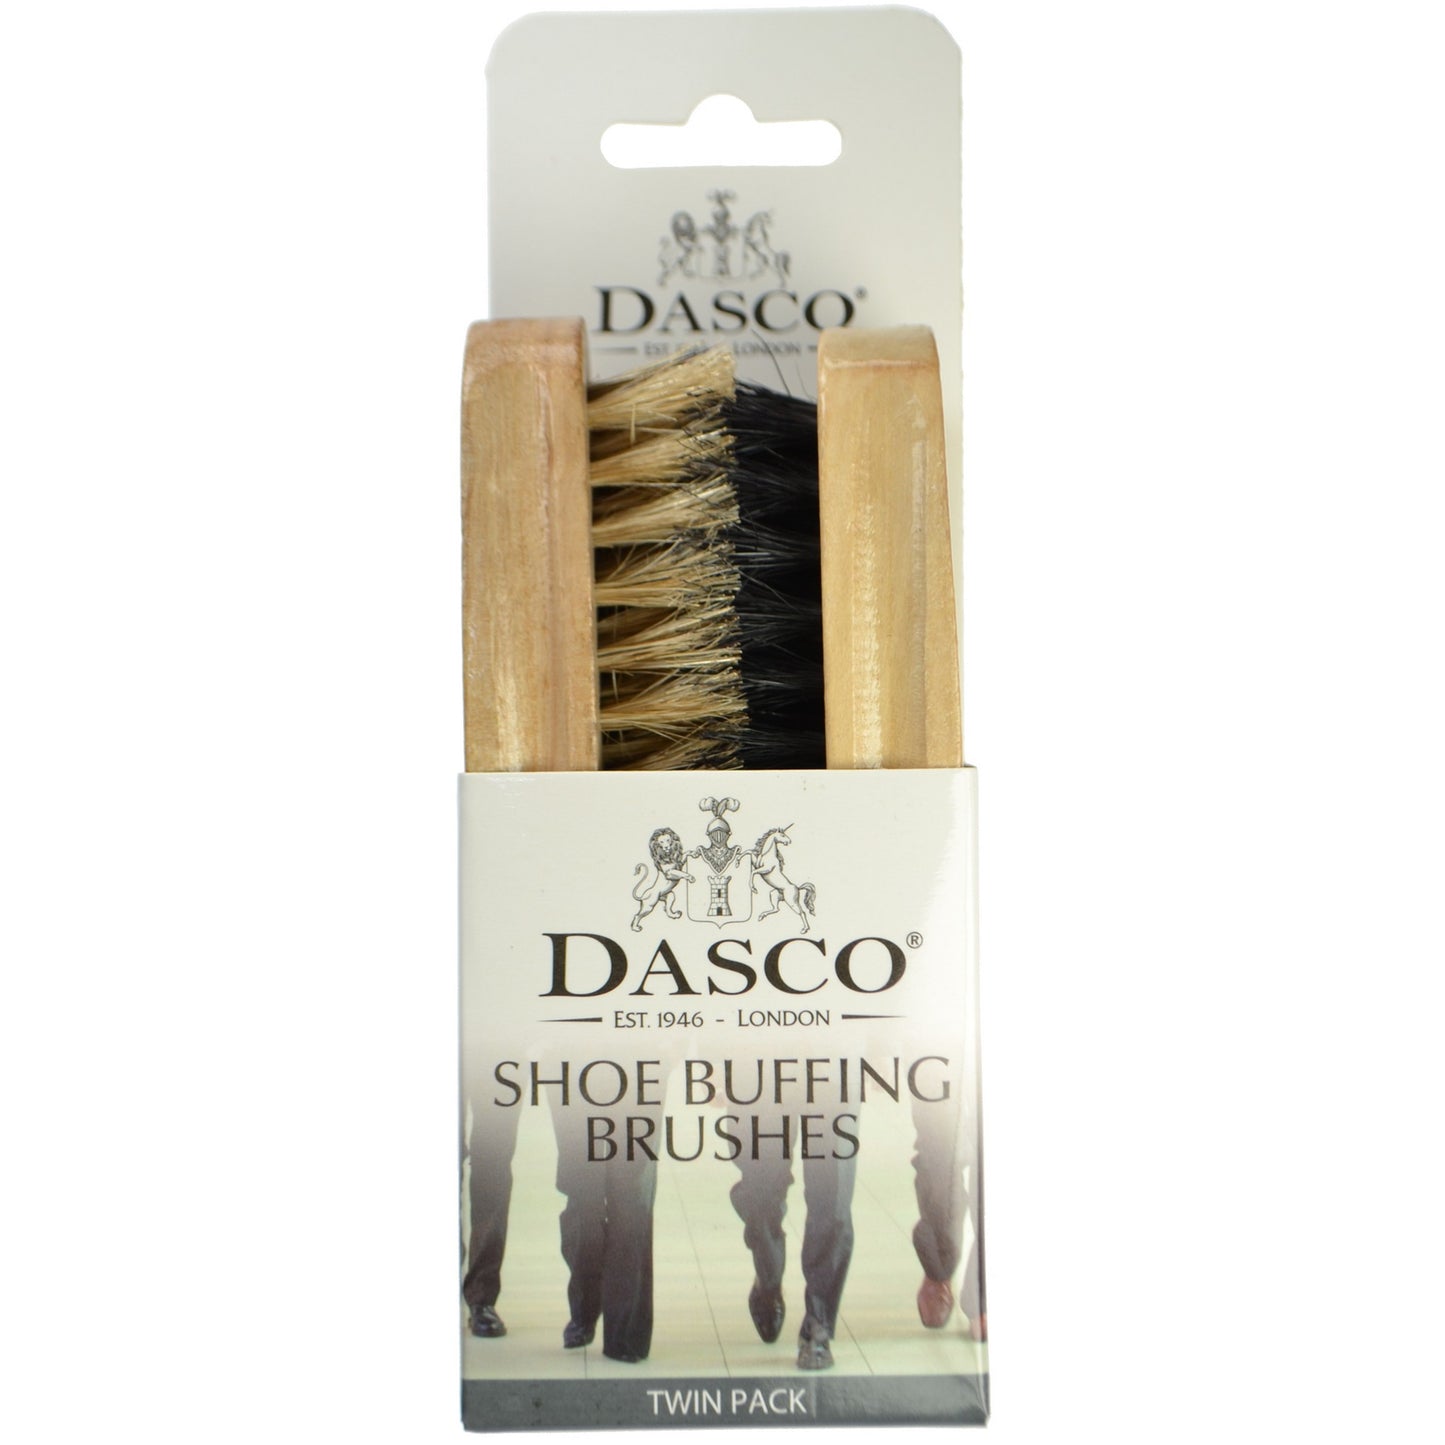 Dasco - Pair of Compact Bristle Brushes